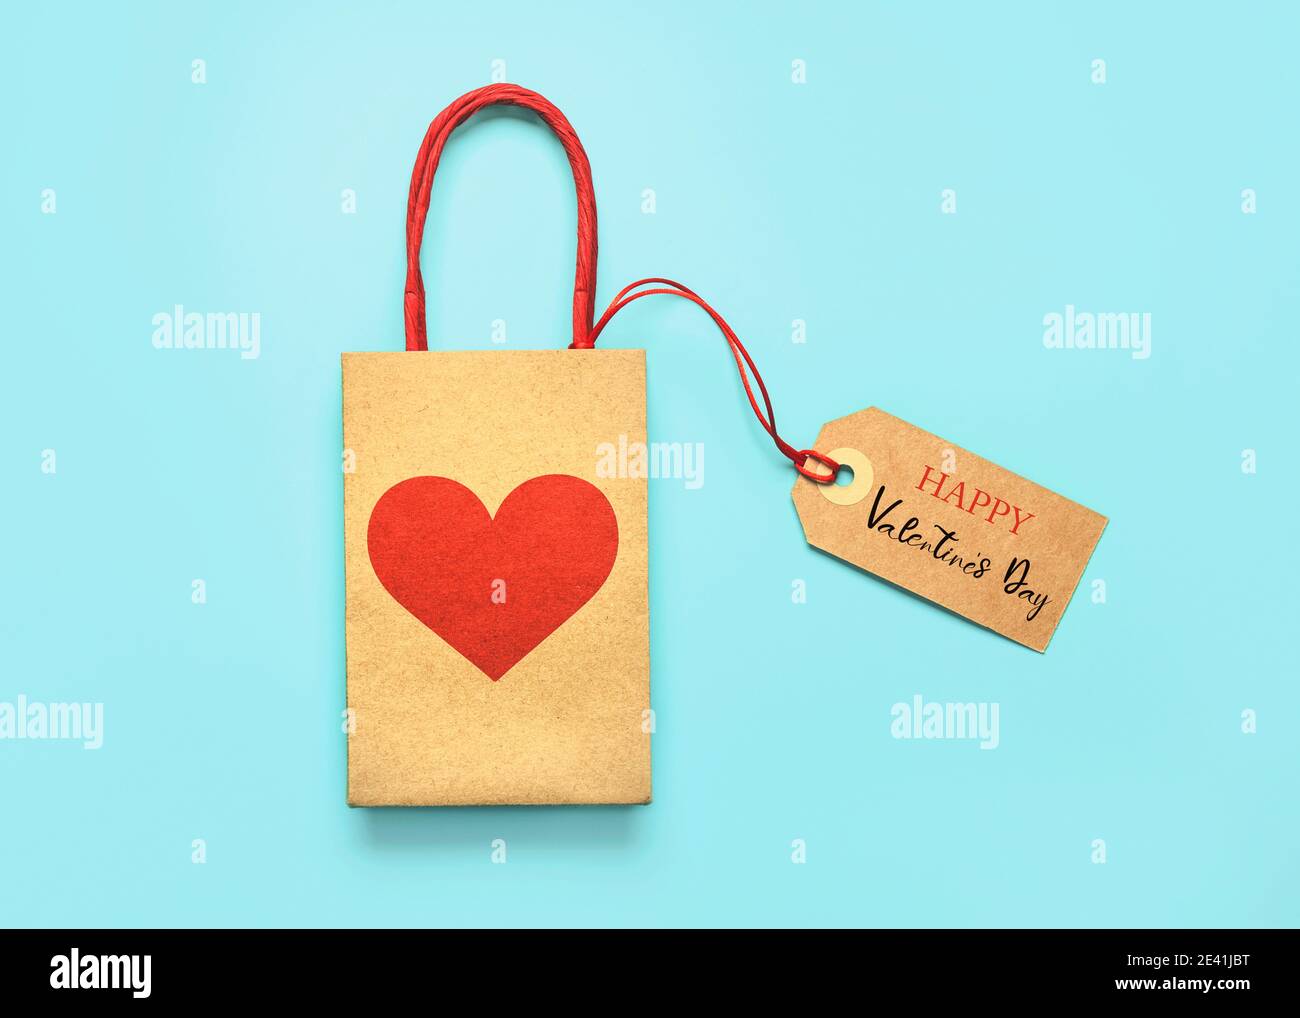 Einkaufstasche mit einem roten Herzen und Sale-Tag mit Text auf blauem Hintergrund.Valentinstag Konzept Stockfoto